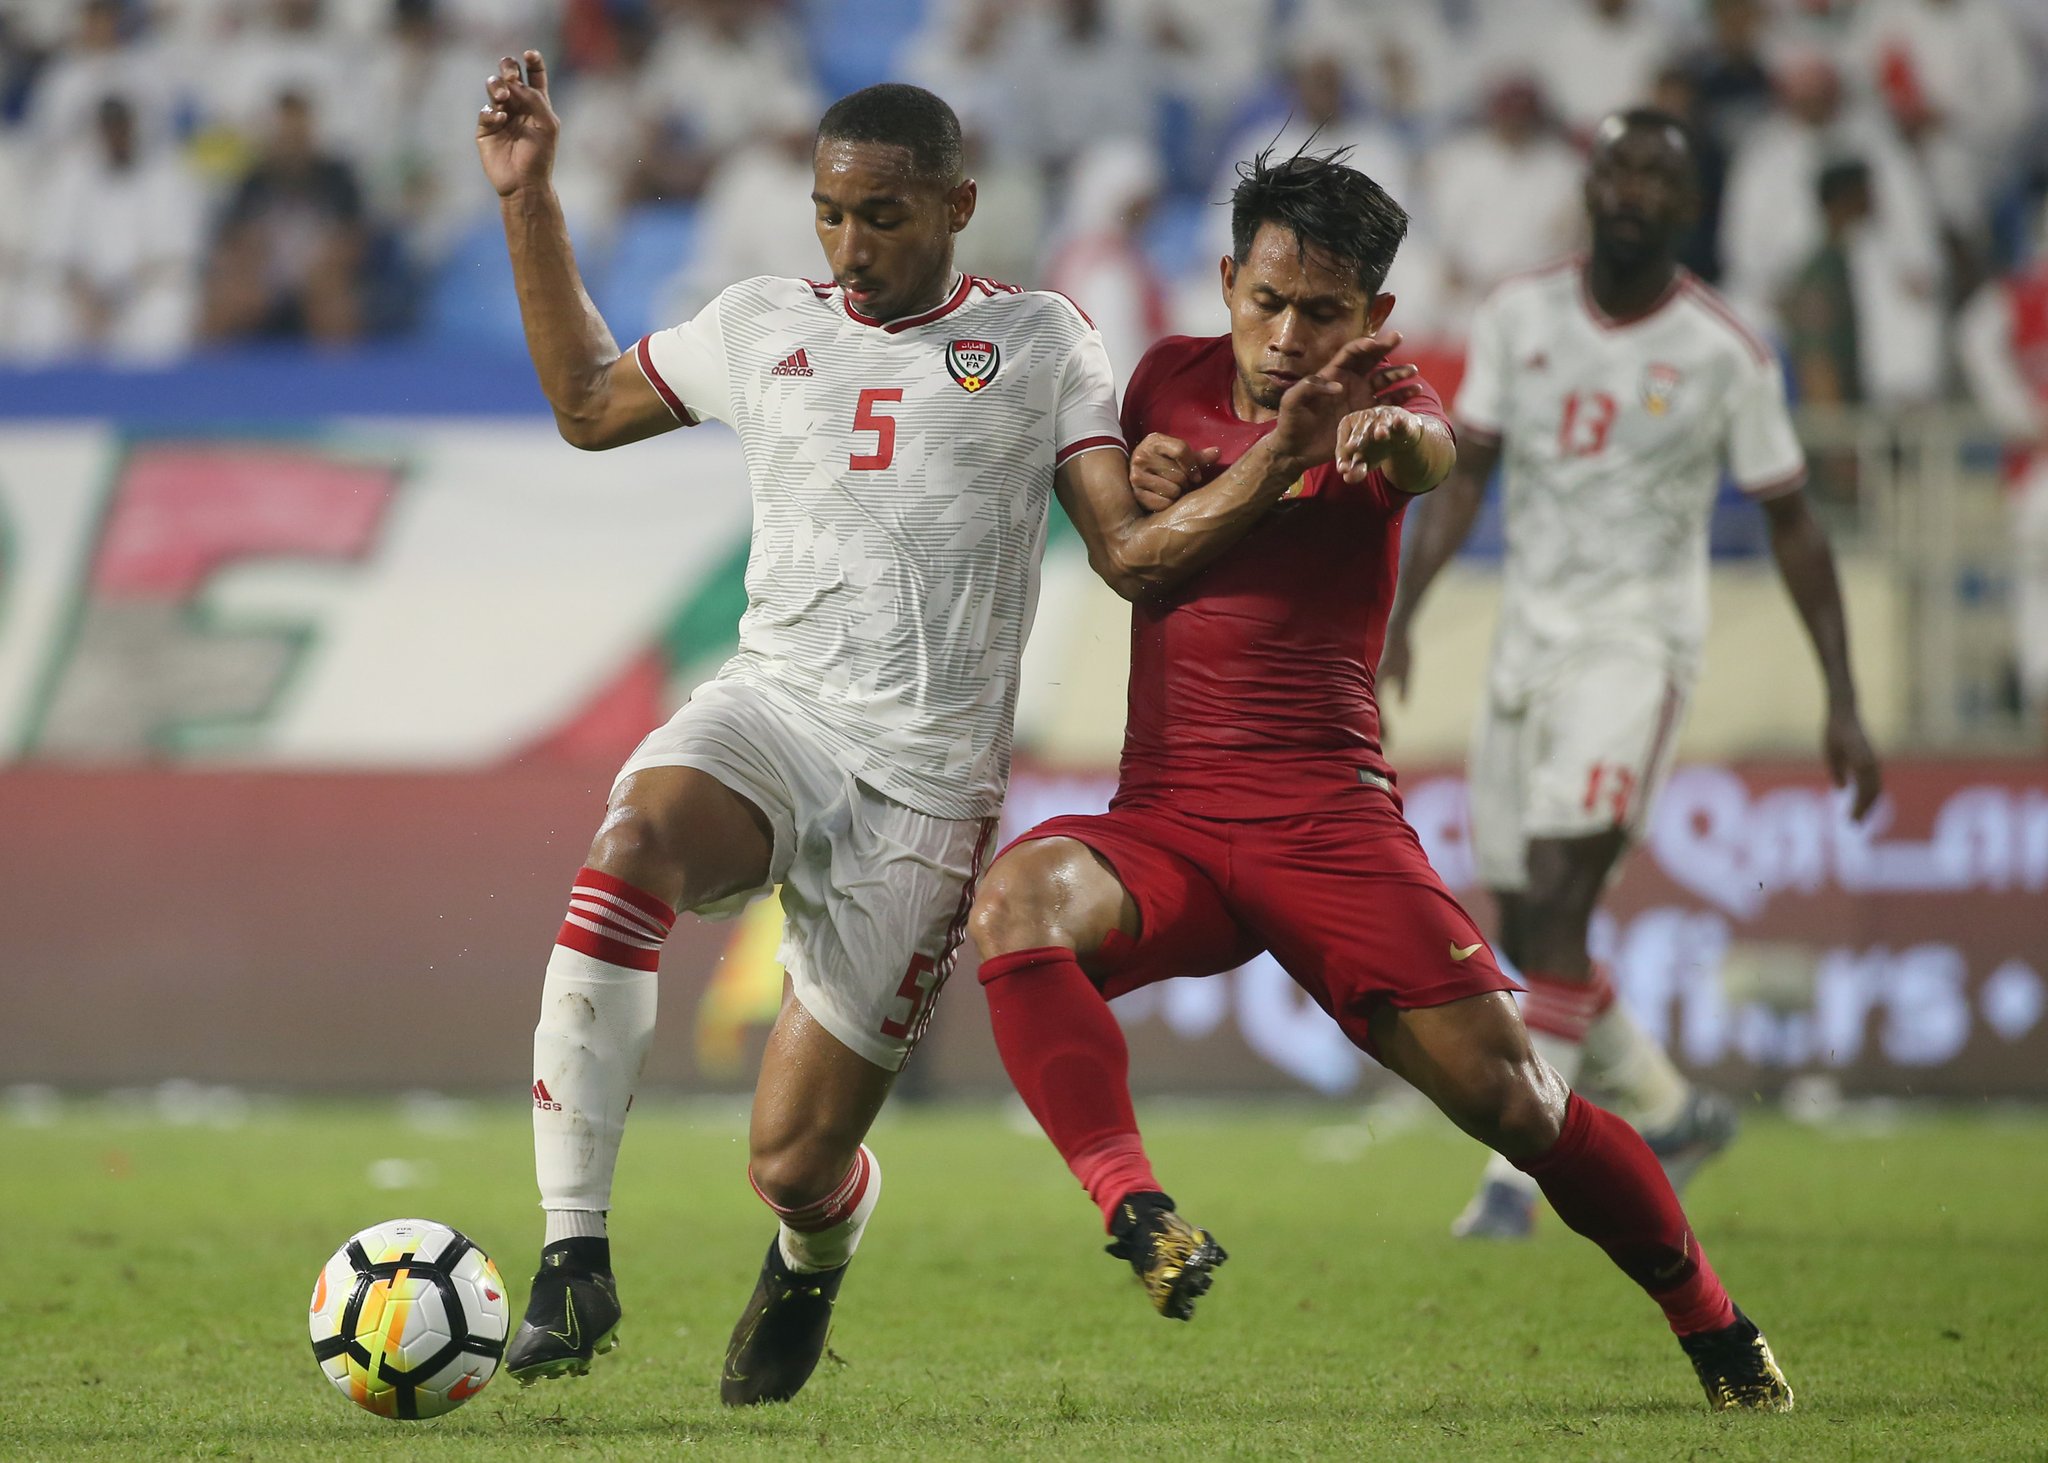 إندونيسيا ضد الإمارات